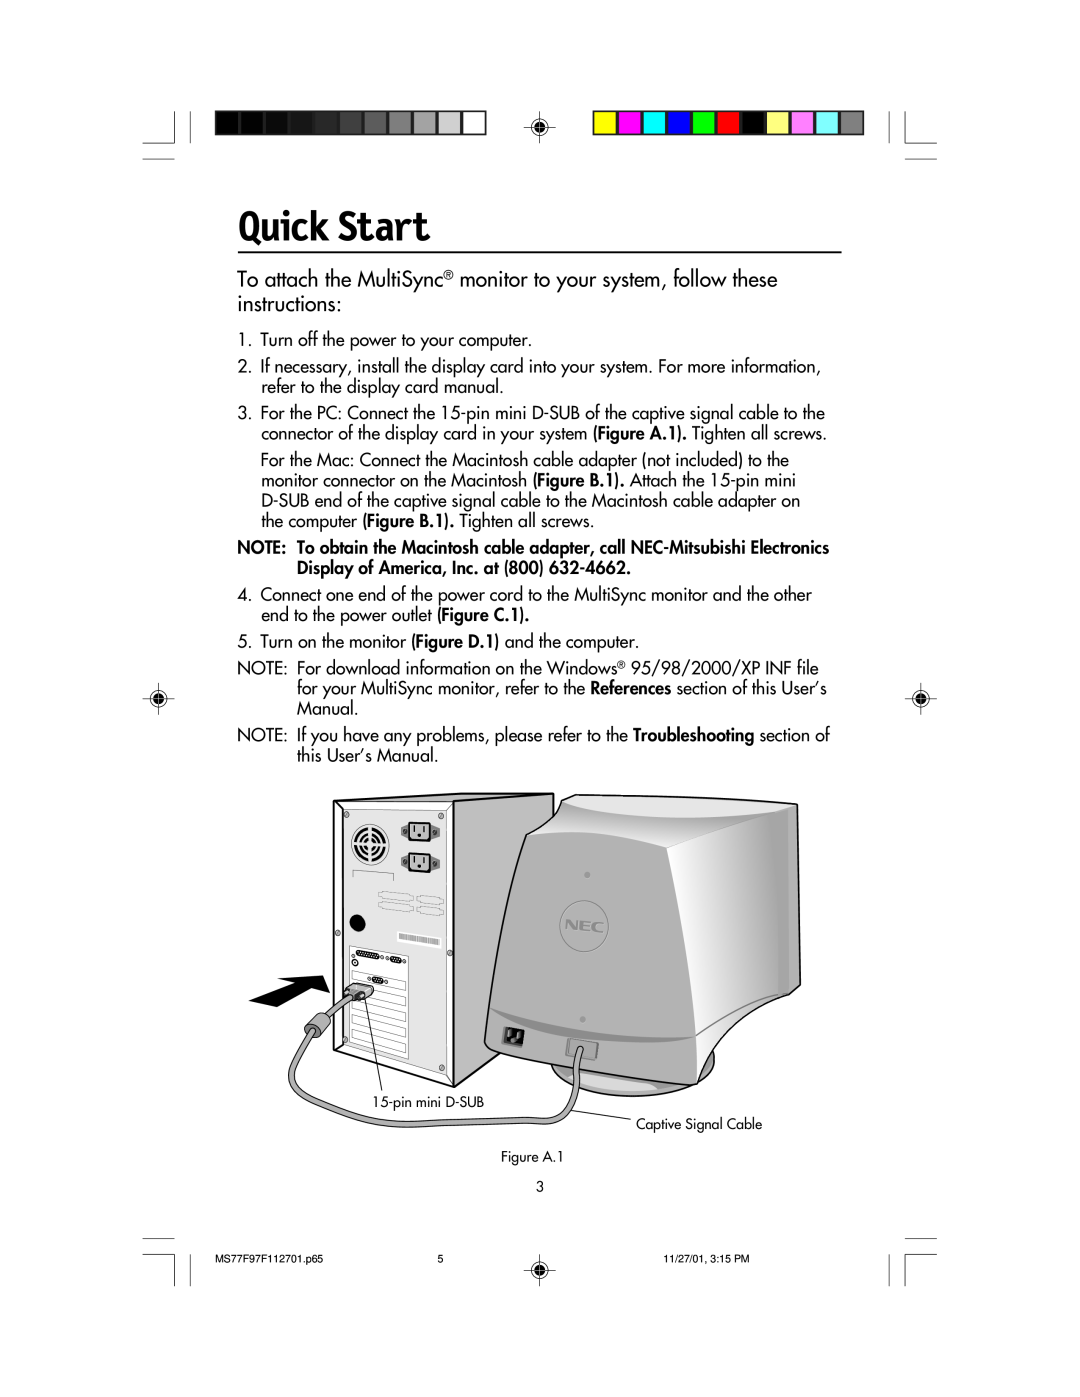 NEC 77F, 97F manual Quick Start 